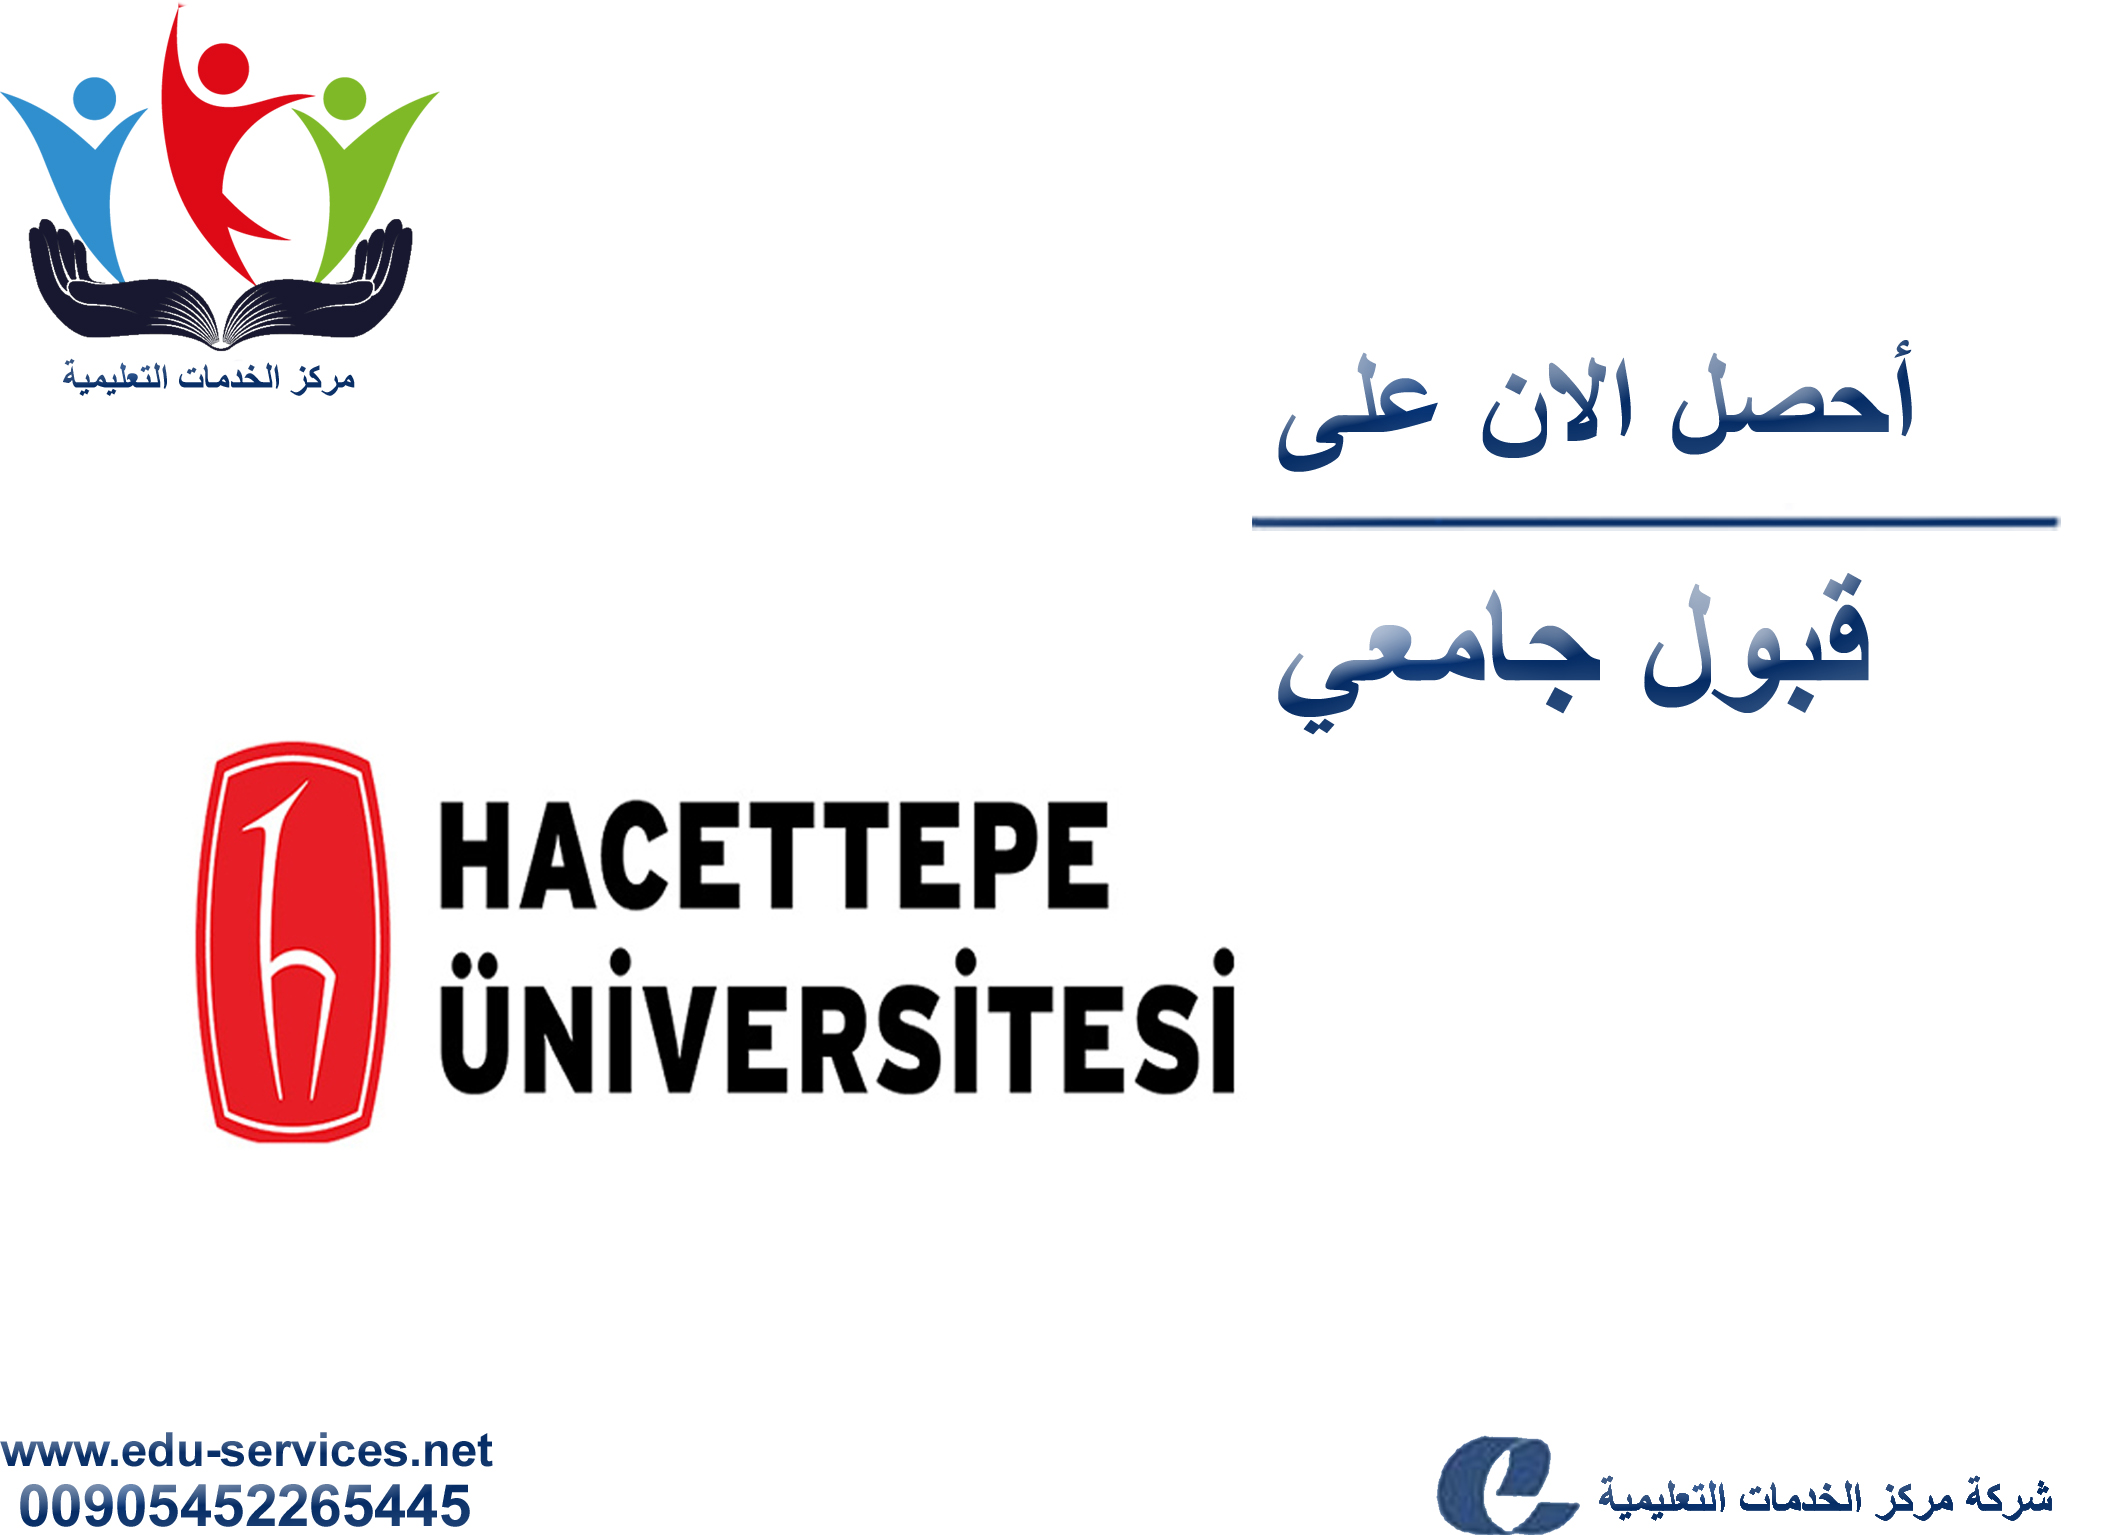 افتتاح التسجيل في جامعة حجة تبة للعام 2018-2019